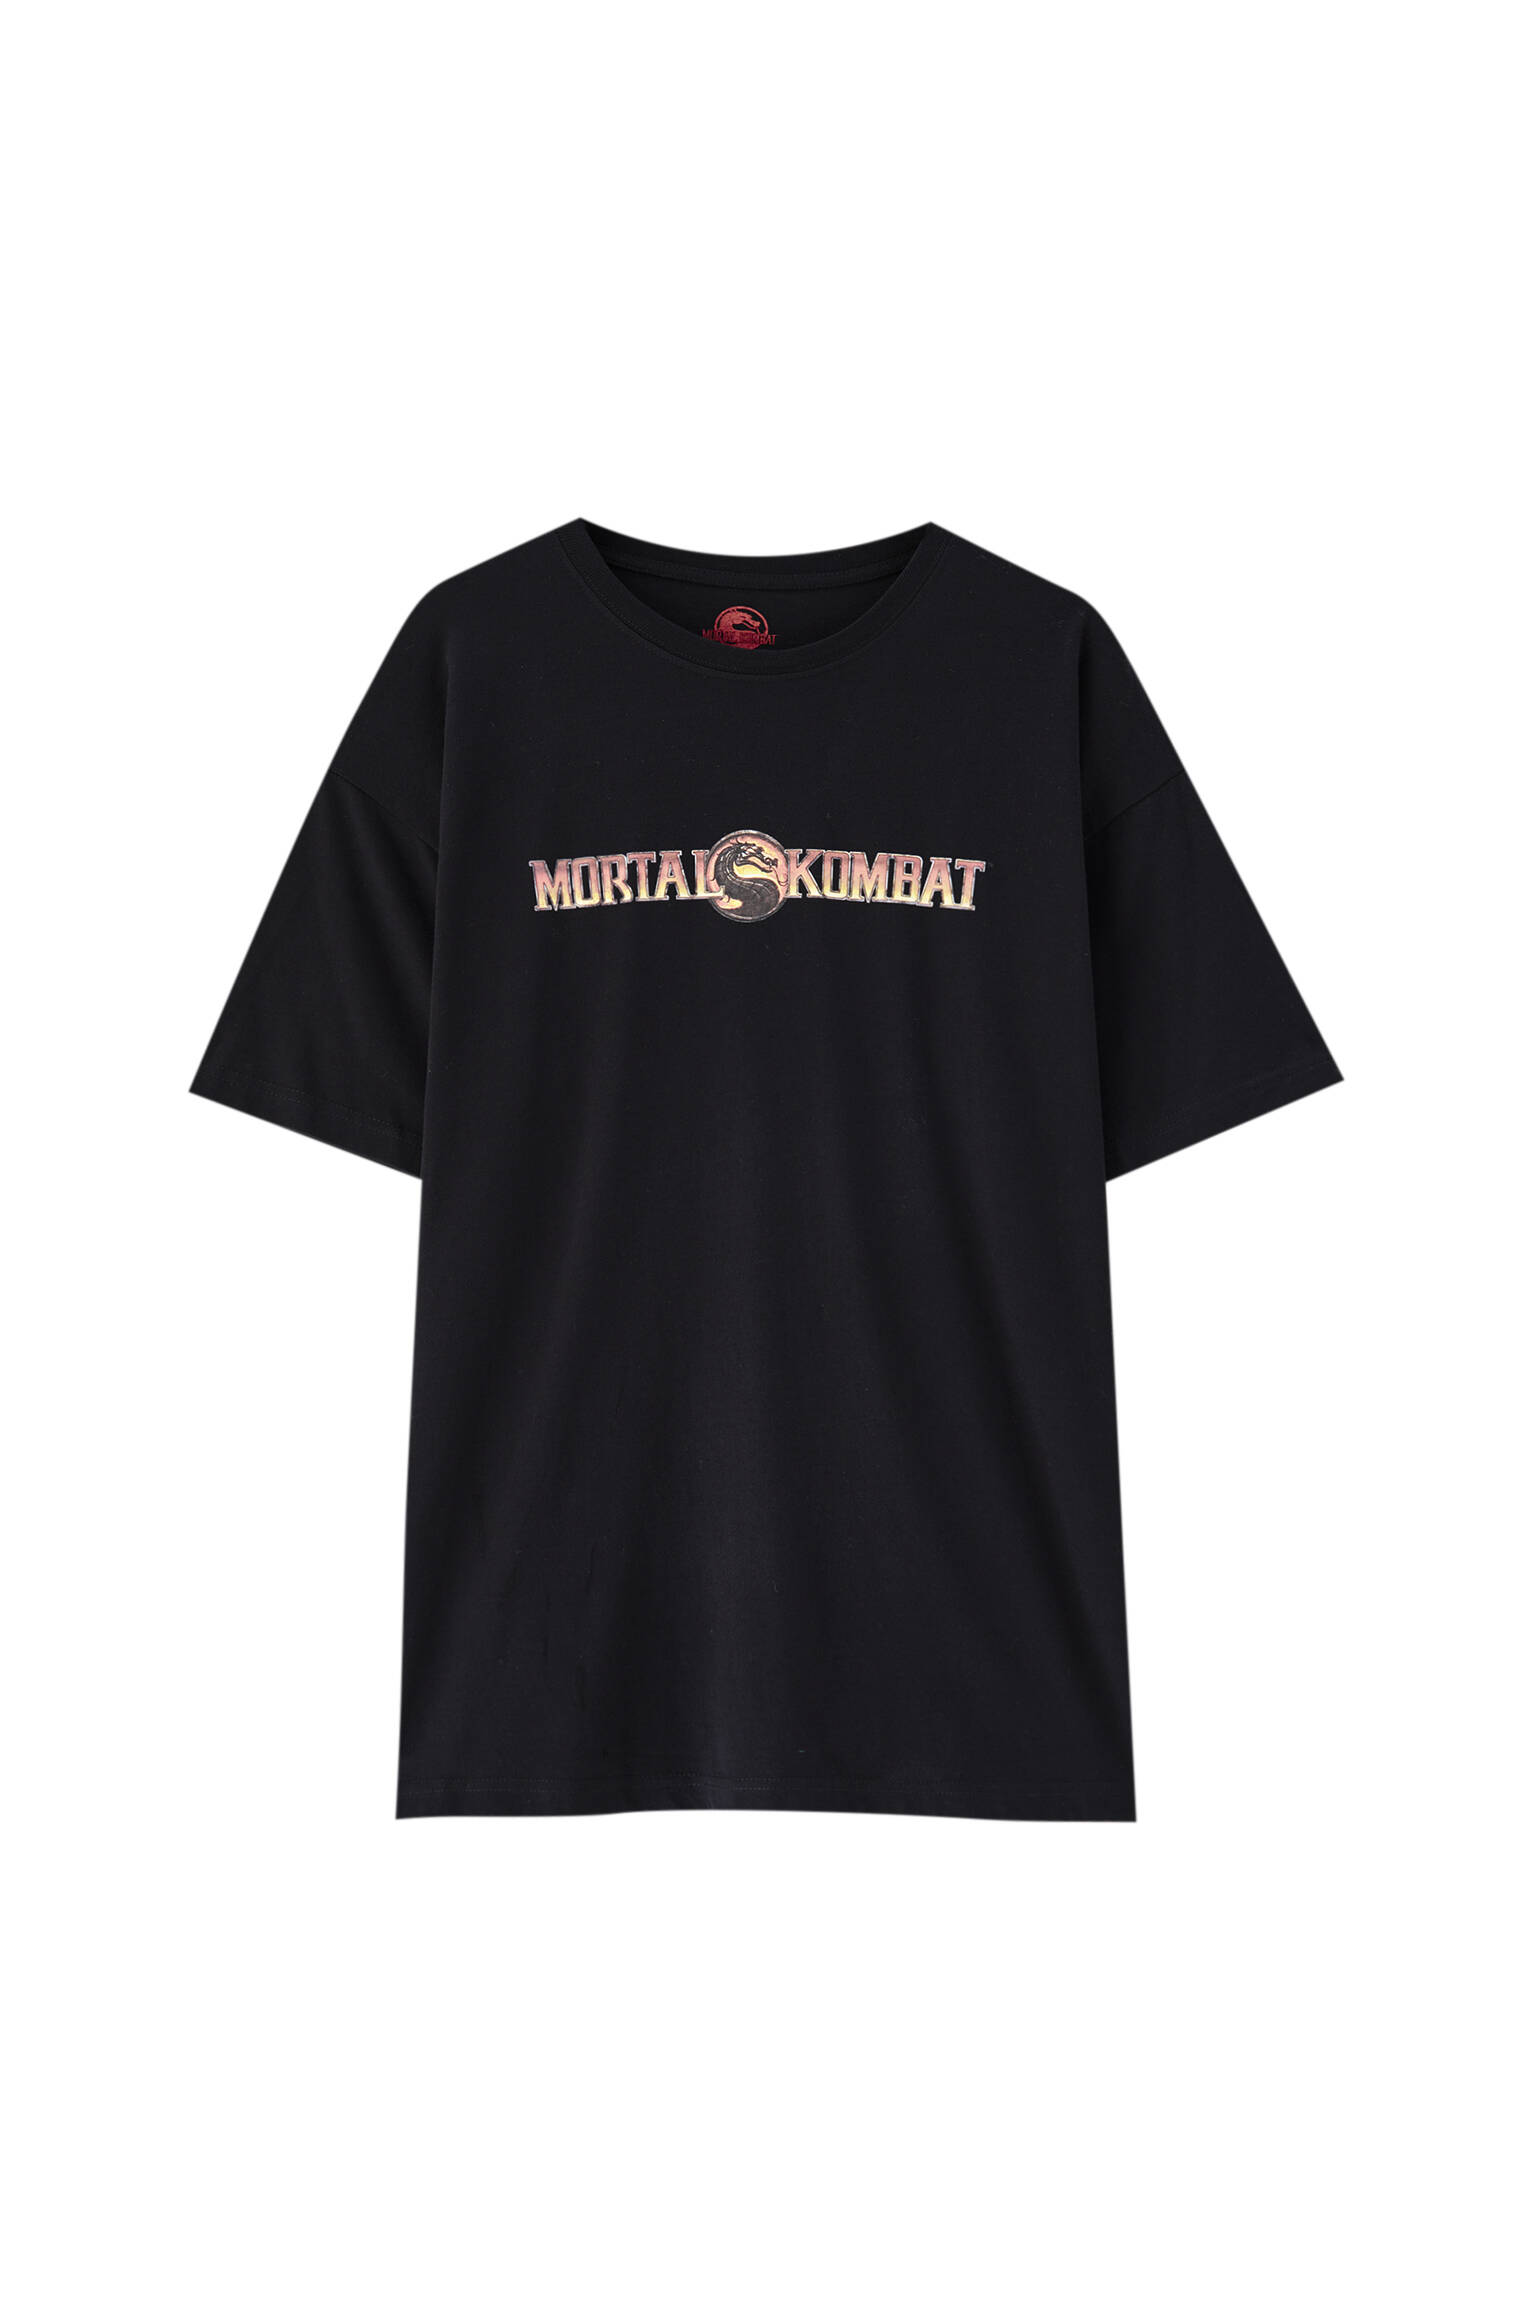 Pull&bear Homme T-shirt Noir 100 % Coton à Manches Courtes Et Col Rond, Avec Illustration Contrastante De Mortal Kombat. Noir Xs